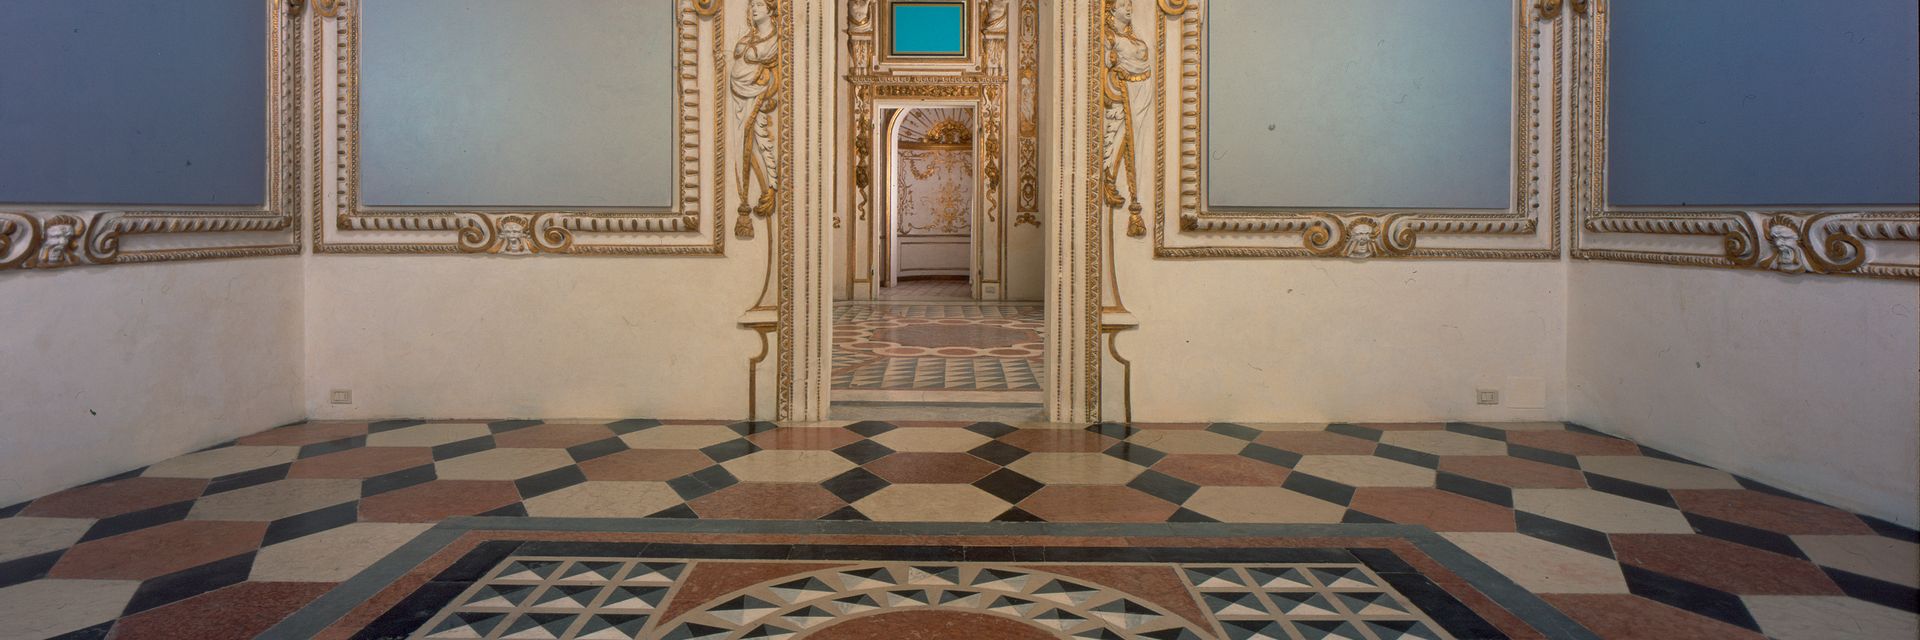 Palais ducal de Sassuolo